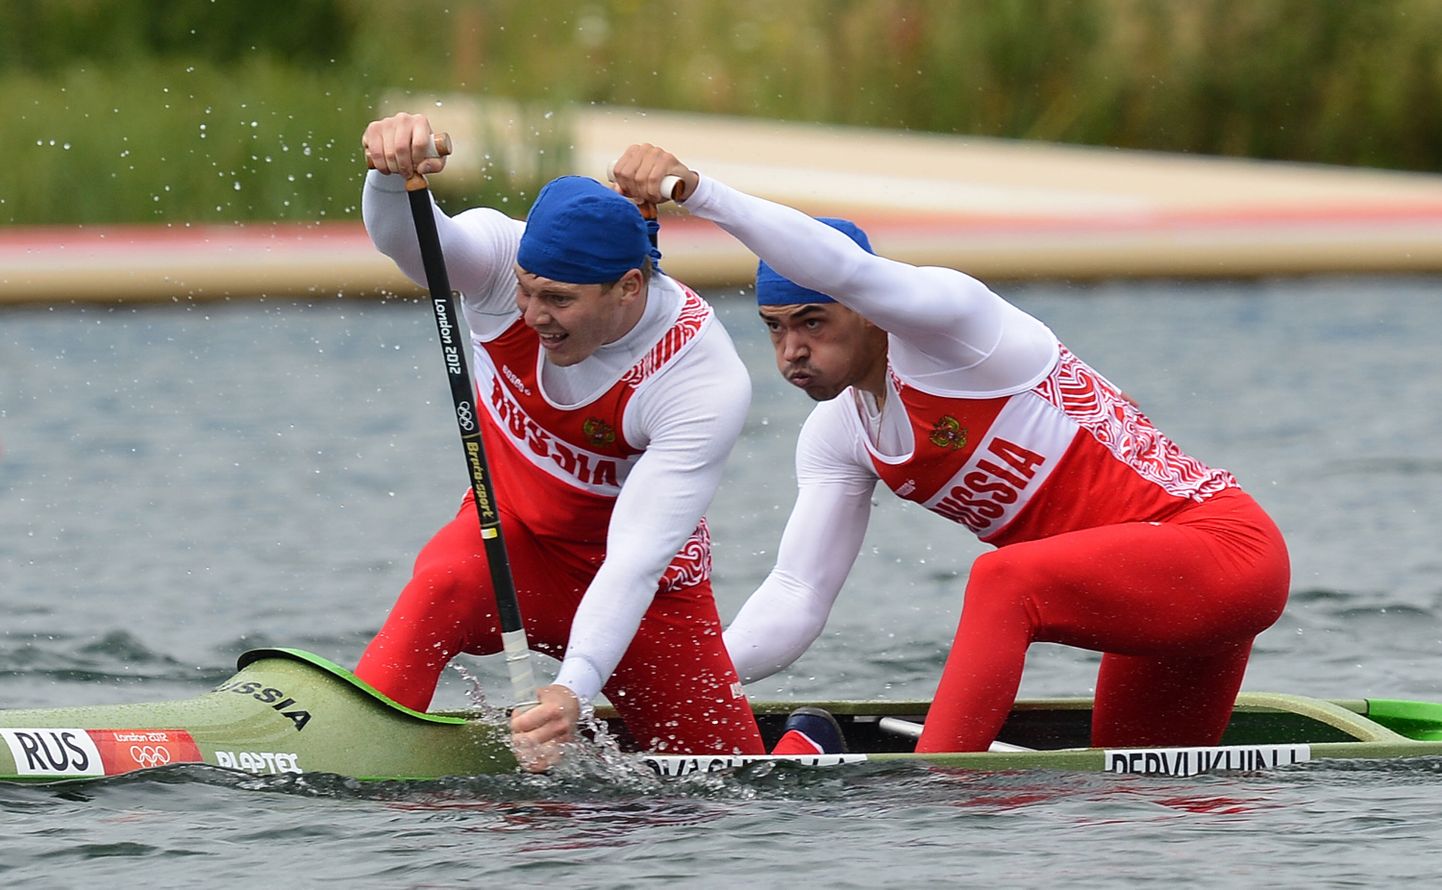 Londoni olümpiamängudel sai Aleksei Korovaškov (vasakul) koos Ilja Pervuhhiniga kahekanuul 1000 meetri distantsil pronskmedali.